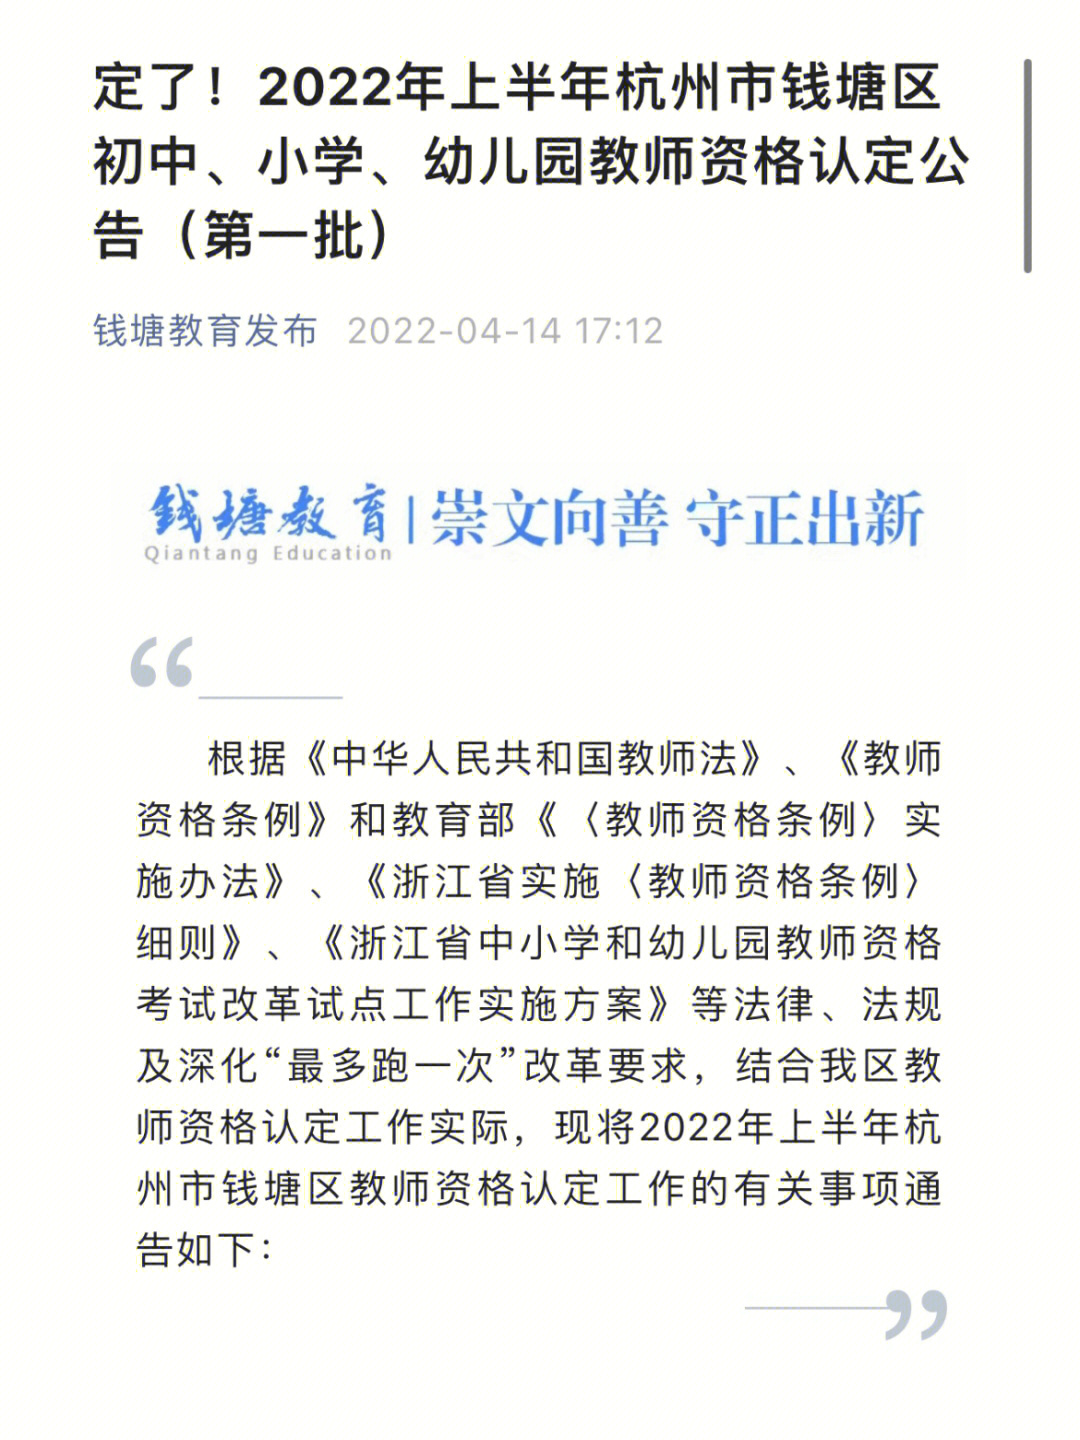 教师资格证认定杭州钱塘区的认定公告新鲜出炉啦,钱塘区的兄弟姐妹们